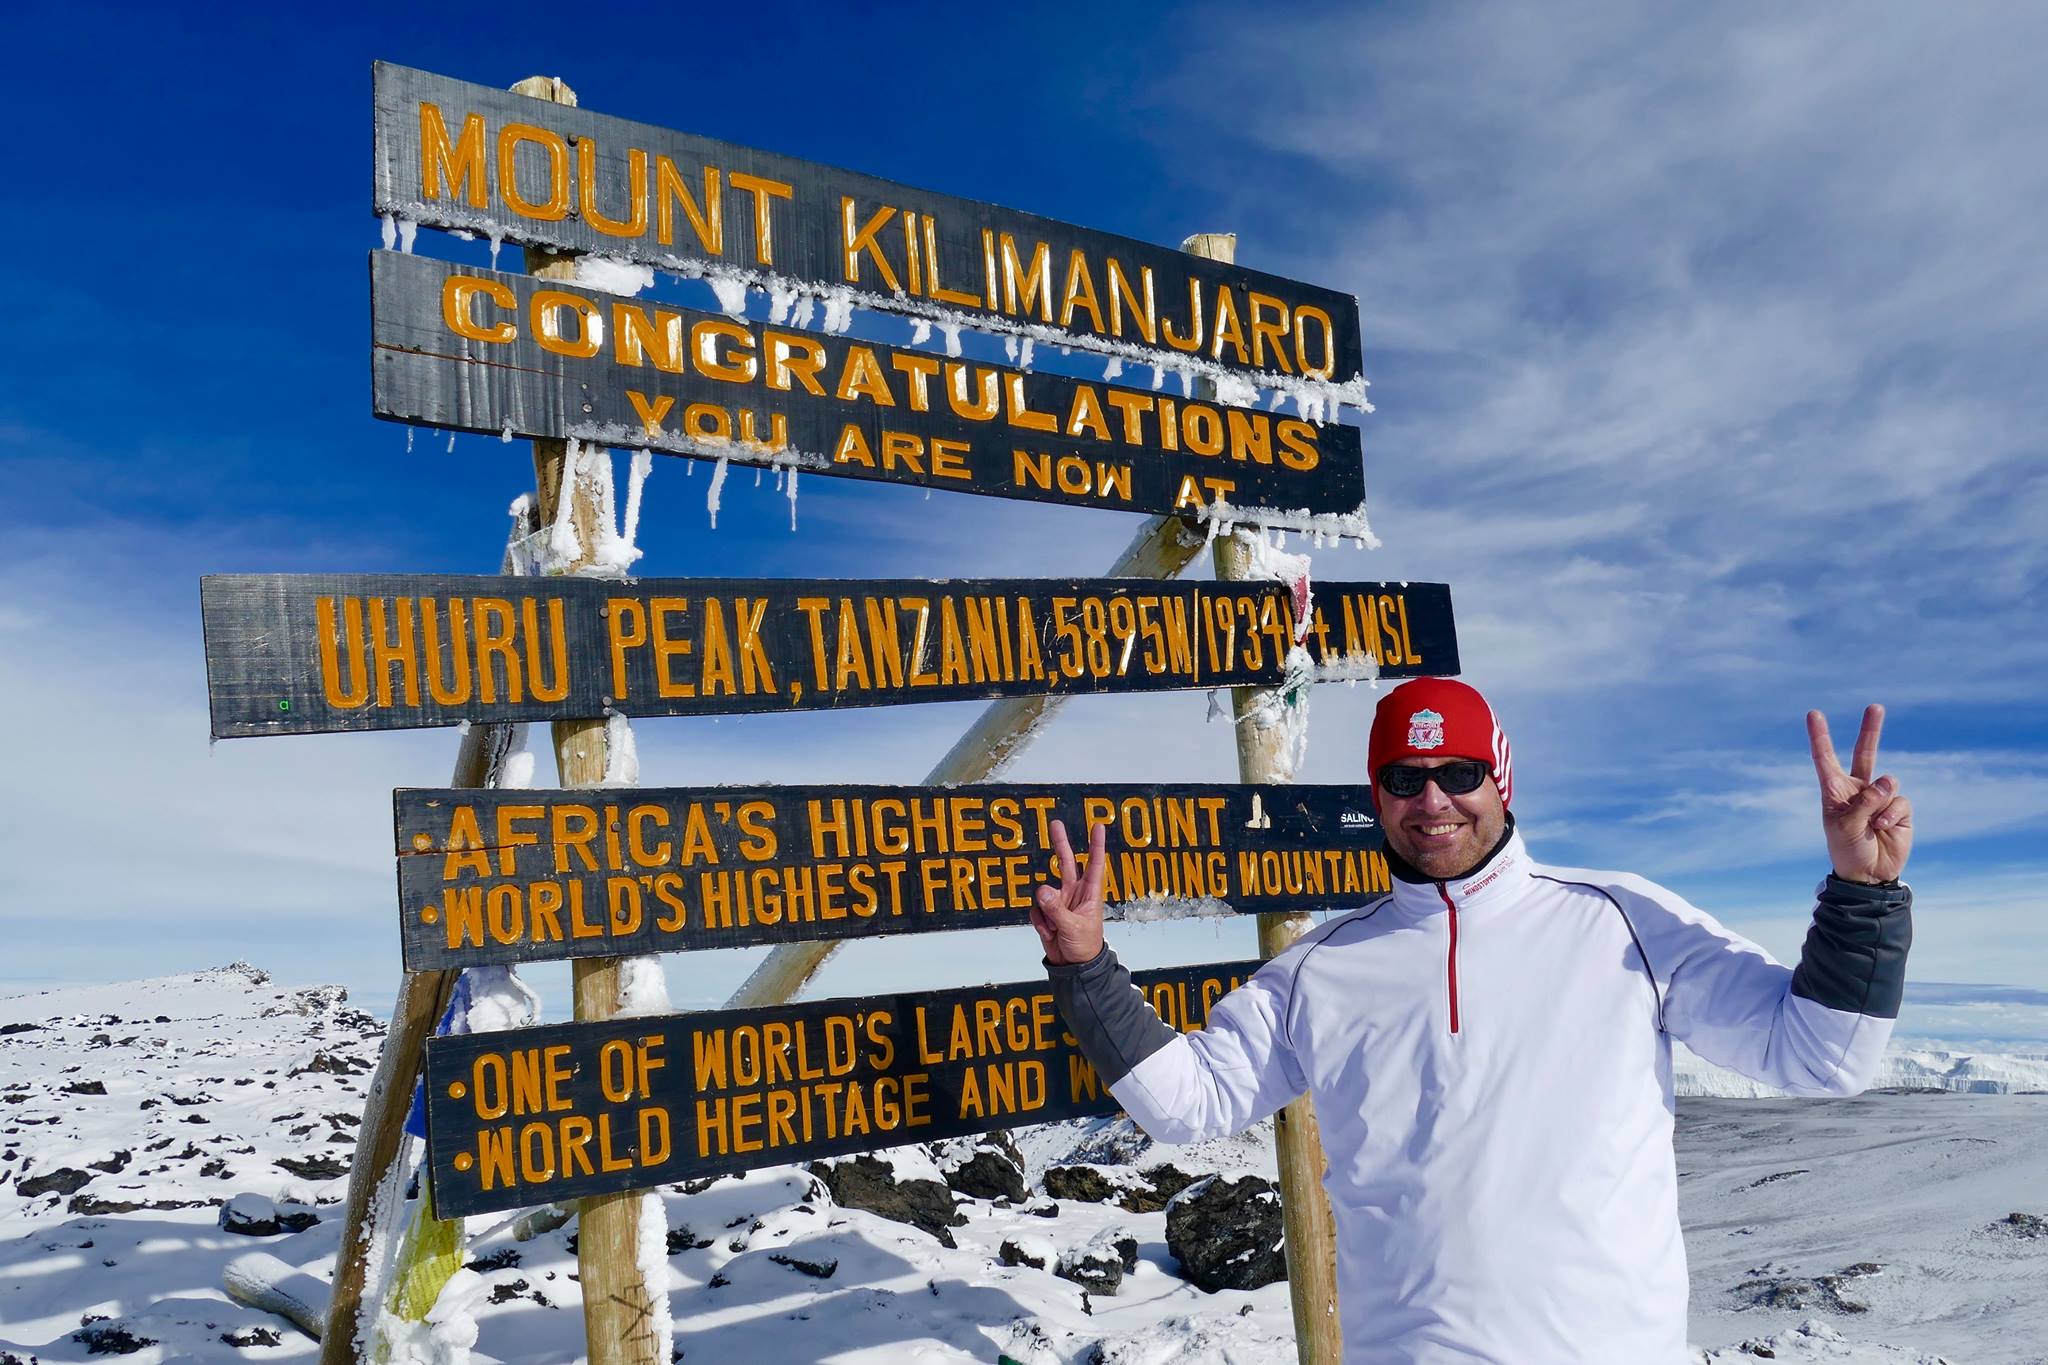 Jacob Hvids råd til Kilimanjaro